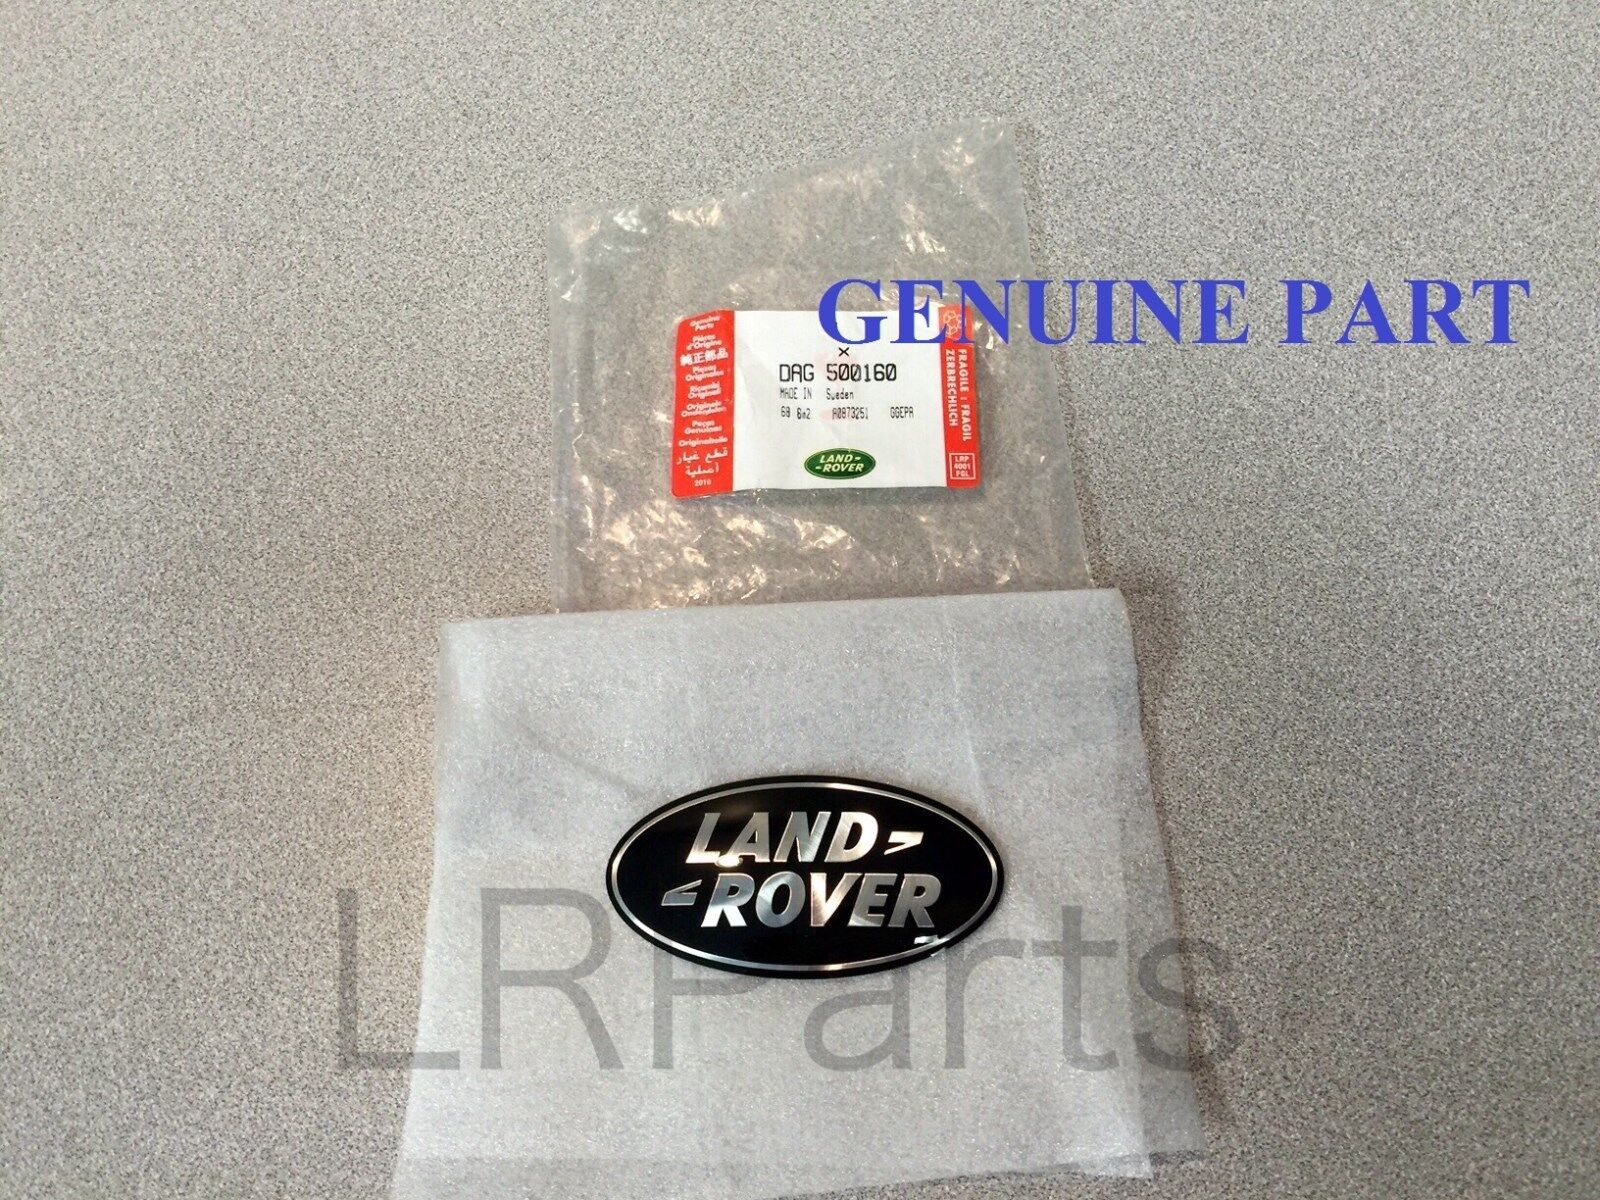 Land Rover Range Rover L322 03-06 Black On Silver Grille Badge Genuine DAG500160